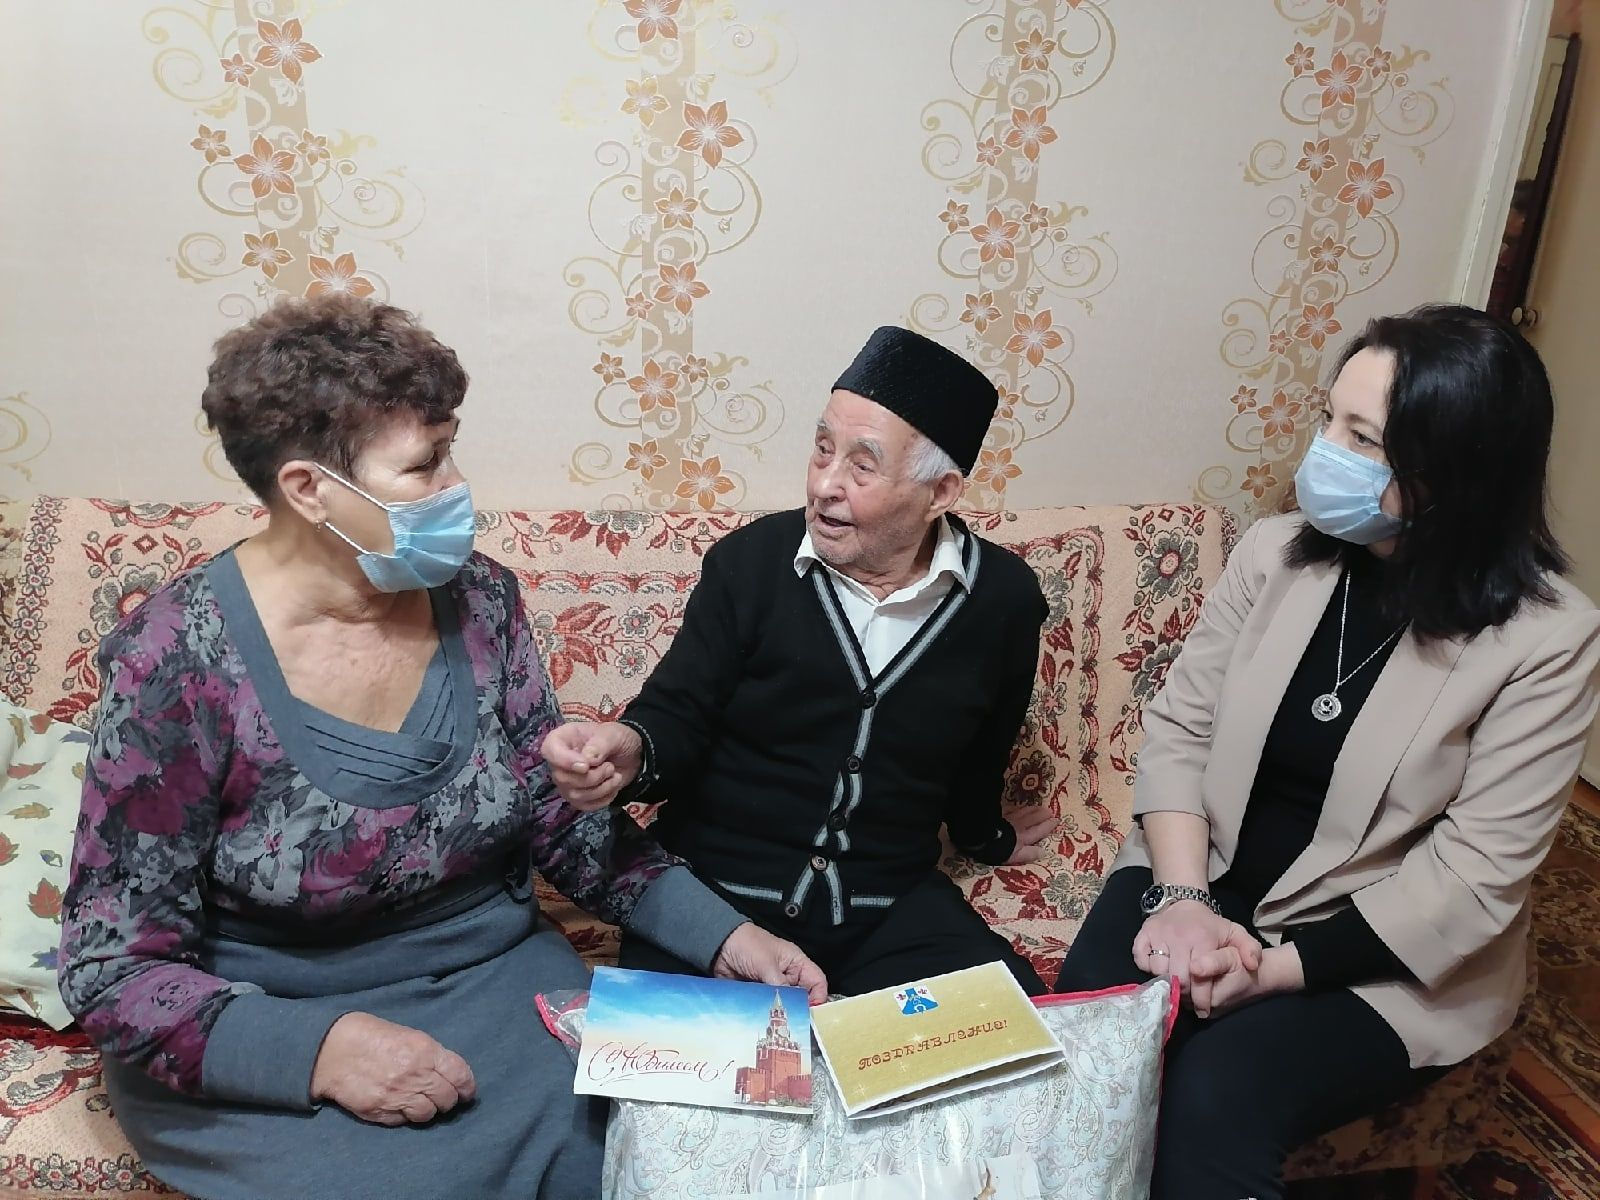 Ветеран войны Билал Валеев: «Цените жизнь и будьте добры»